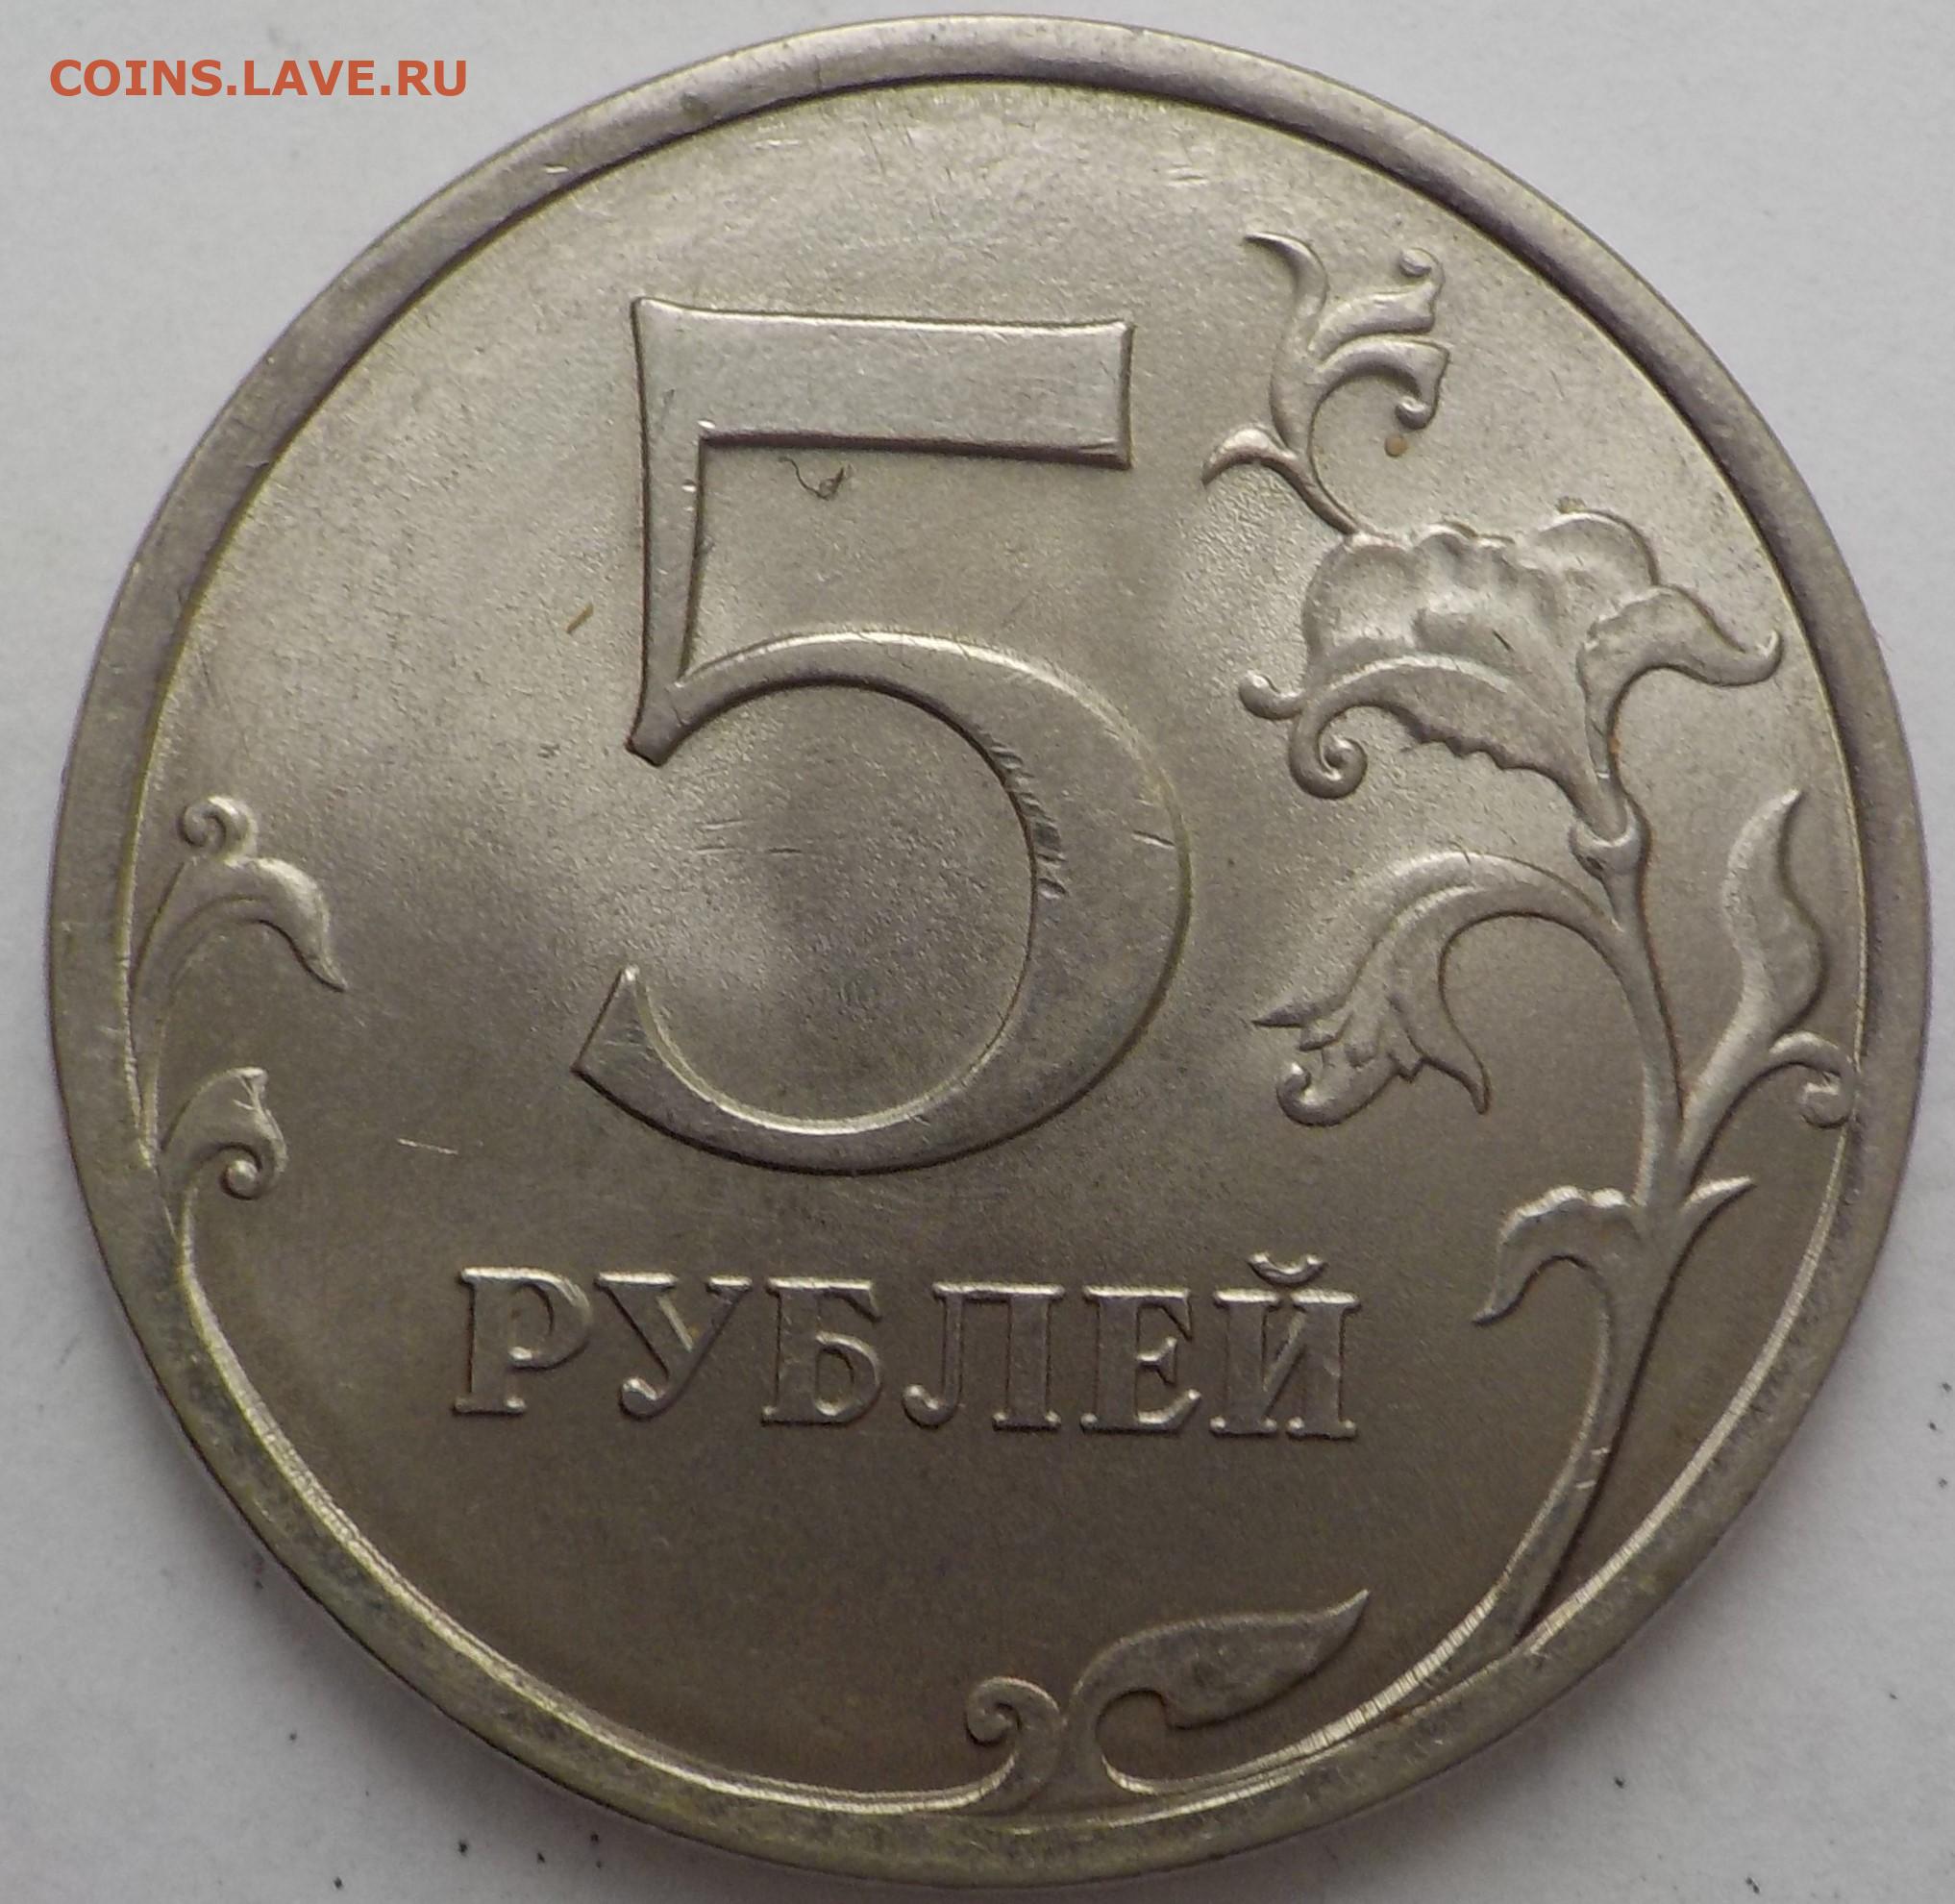 Оплатить 5 рублей. Пять рублей. Размер 5 рублевой монеты. Размер 5 рублей. 5 Рублей картинка.